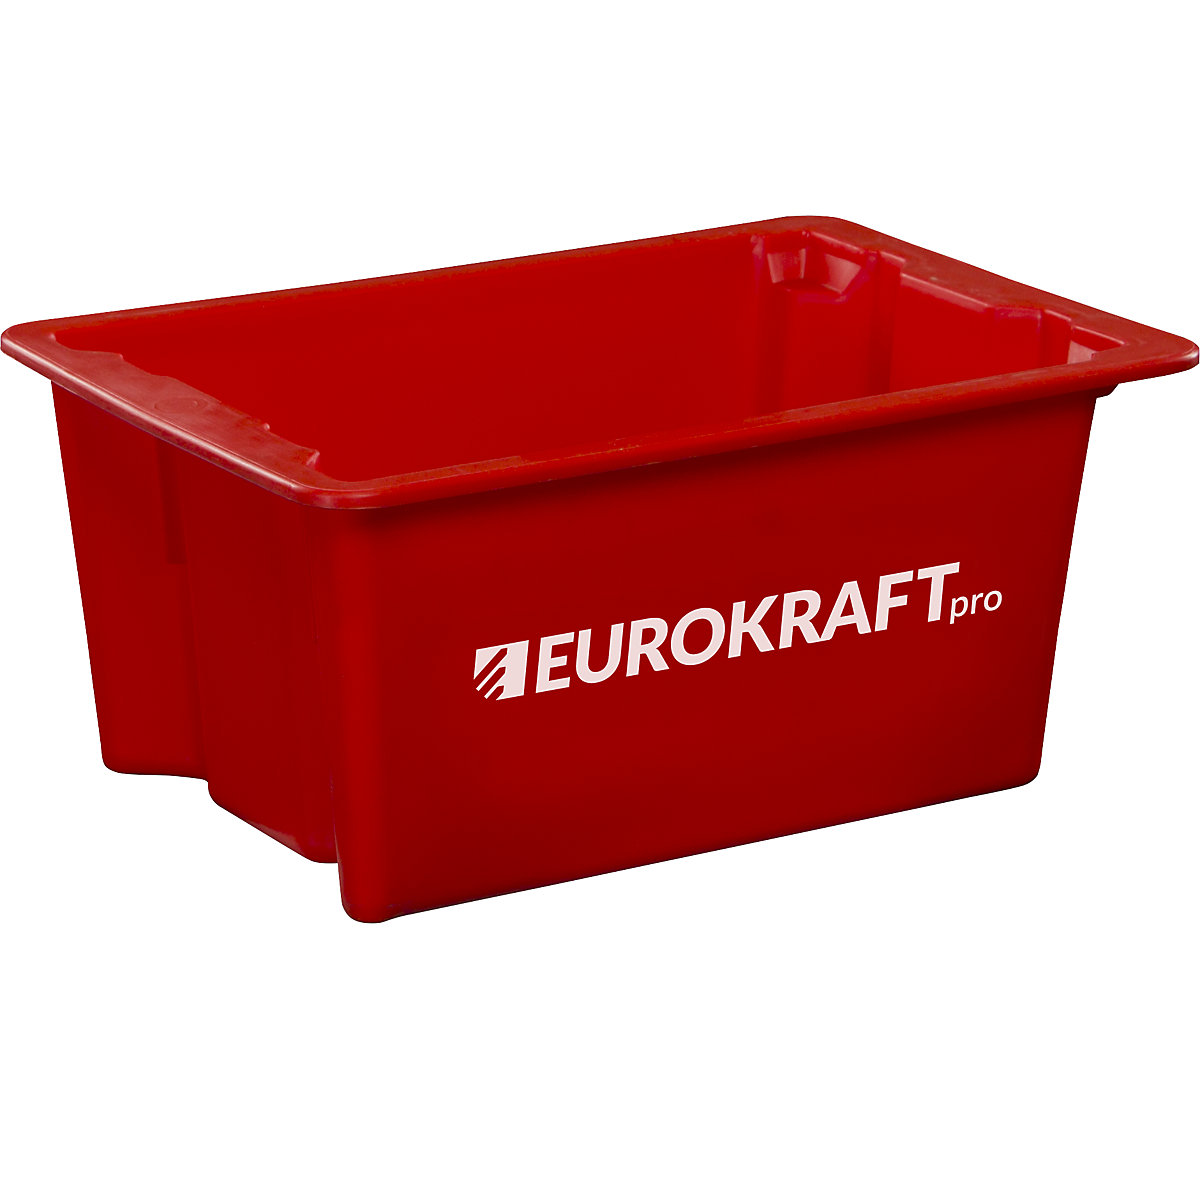 EUROKRAFTpro – Spremnik za slaganje od polipropilena pogodnog za kontakt s prehrambenim proizvodima, volumen 6 l, pak. 4 kom., zatvorene stijenke i dno, u crvenoj boji